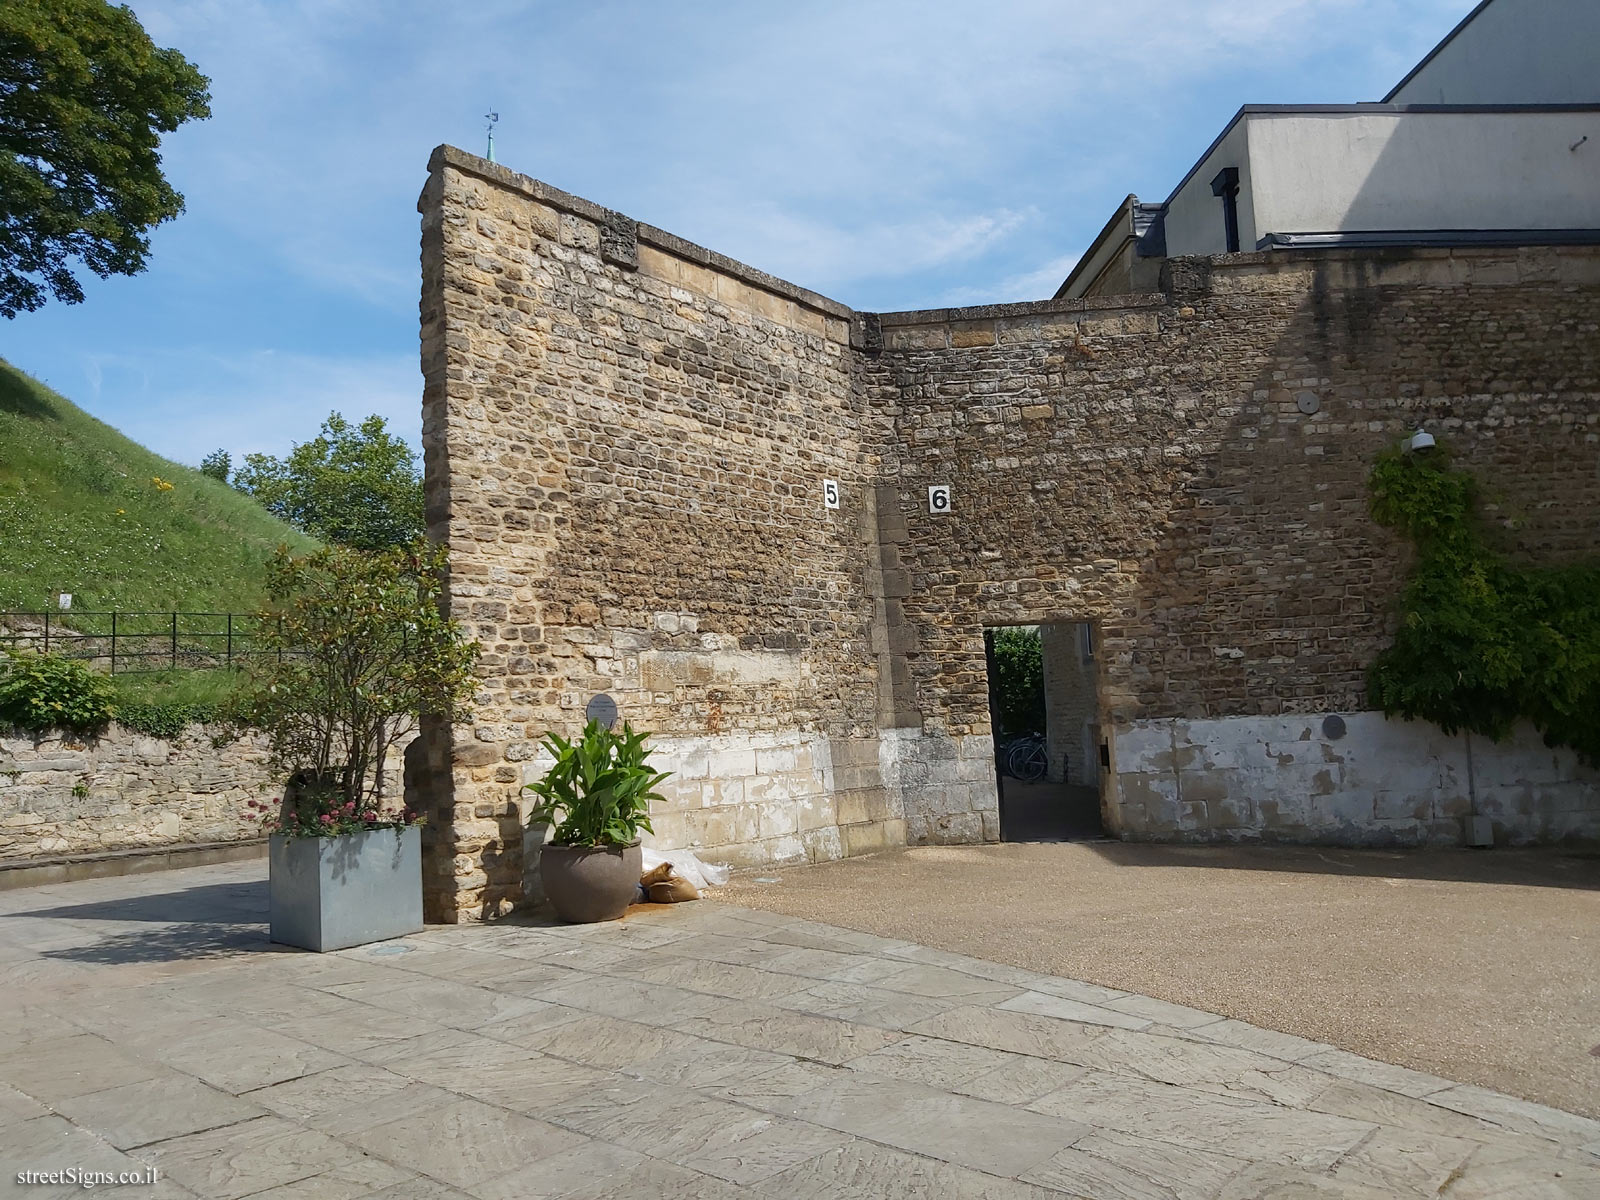 Oxford - Oxford Castle - The Perimeter Wall at Oxford Prison